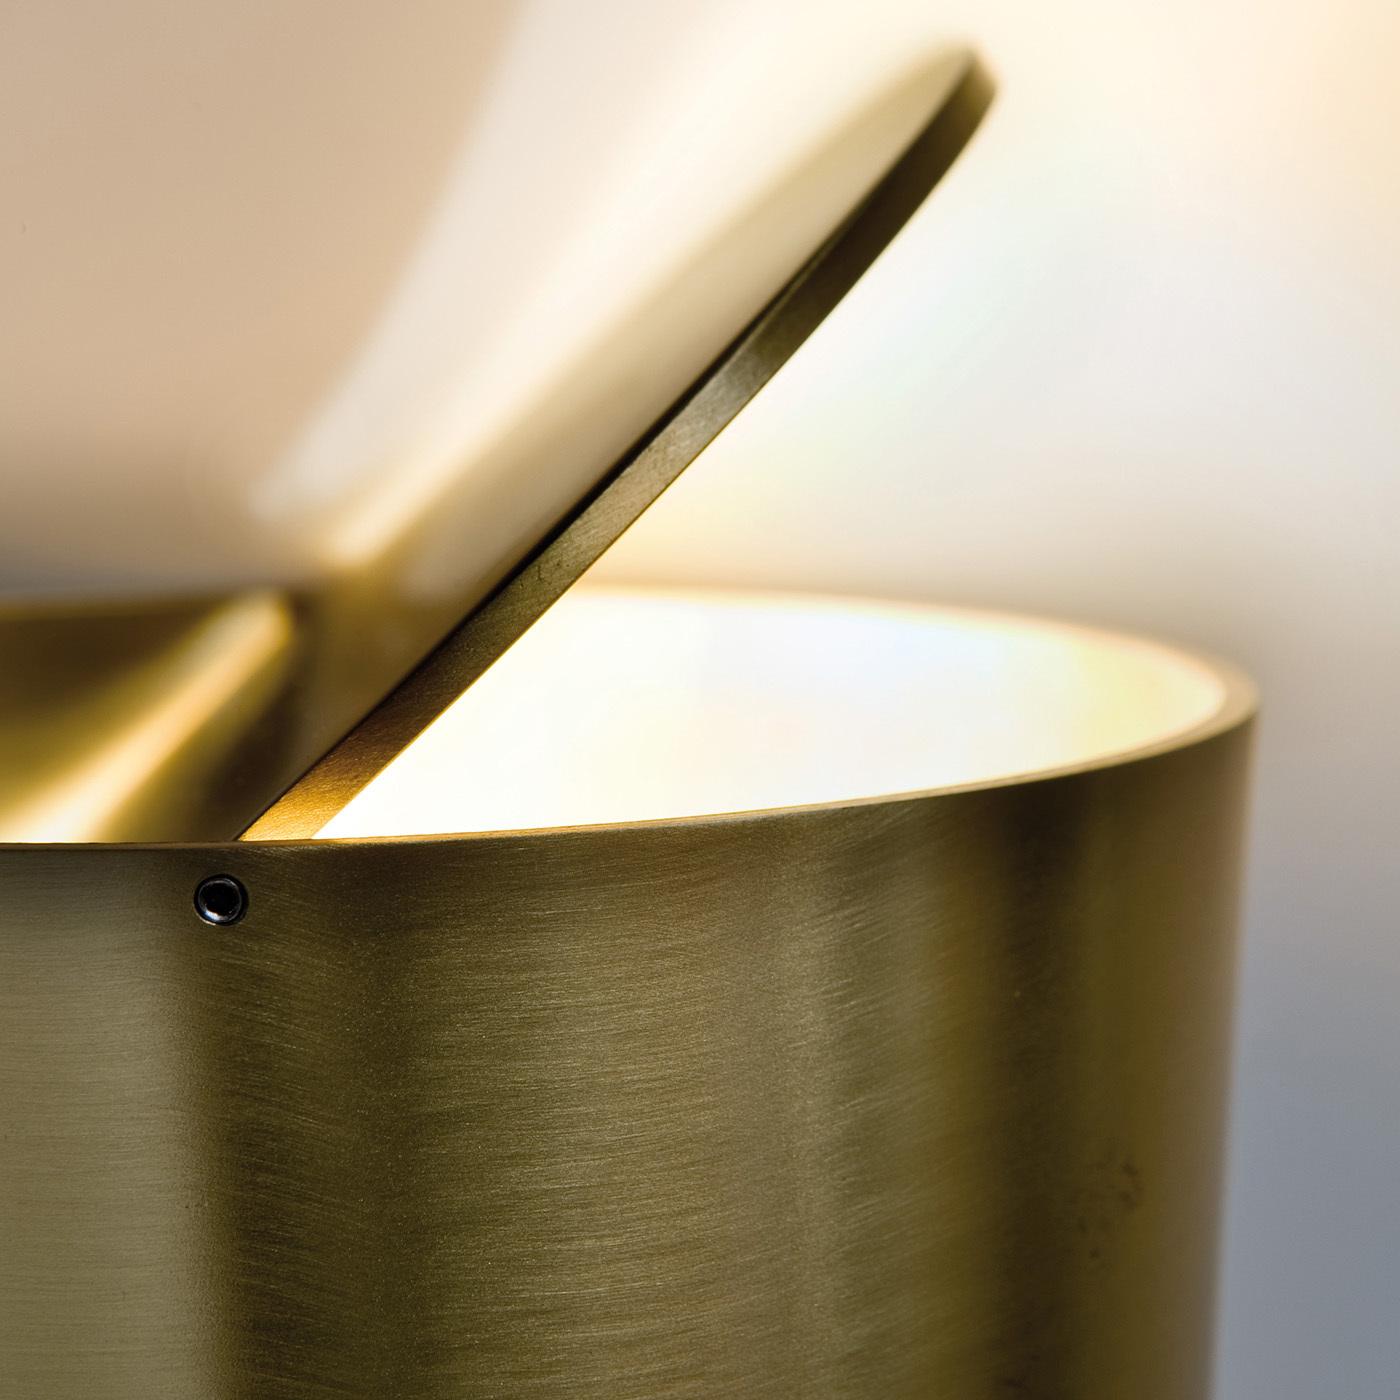 Die innovative Tischleuchte Tubo zeichnet sich durch eine elegante Struktur aus satiniertem Messing mit einer raffinierten, verstellbaren oberen Scheibe aus, mit der die Lichtintensität und -richtung kalibriert werden kann. Diese schlichte, elegante